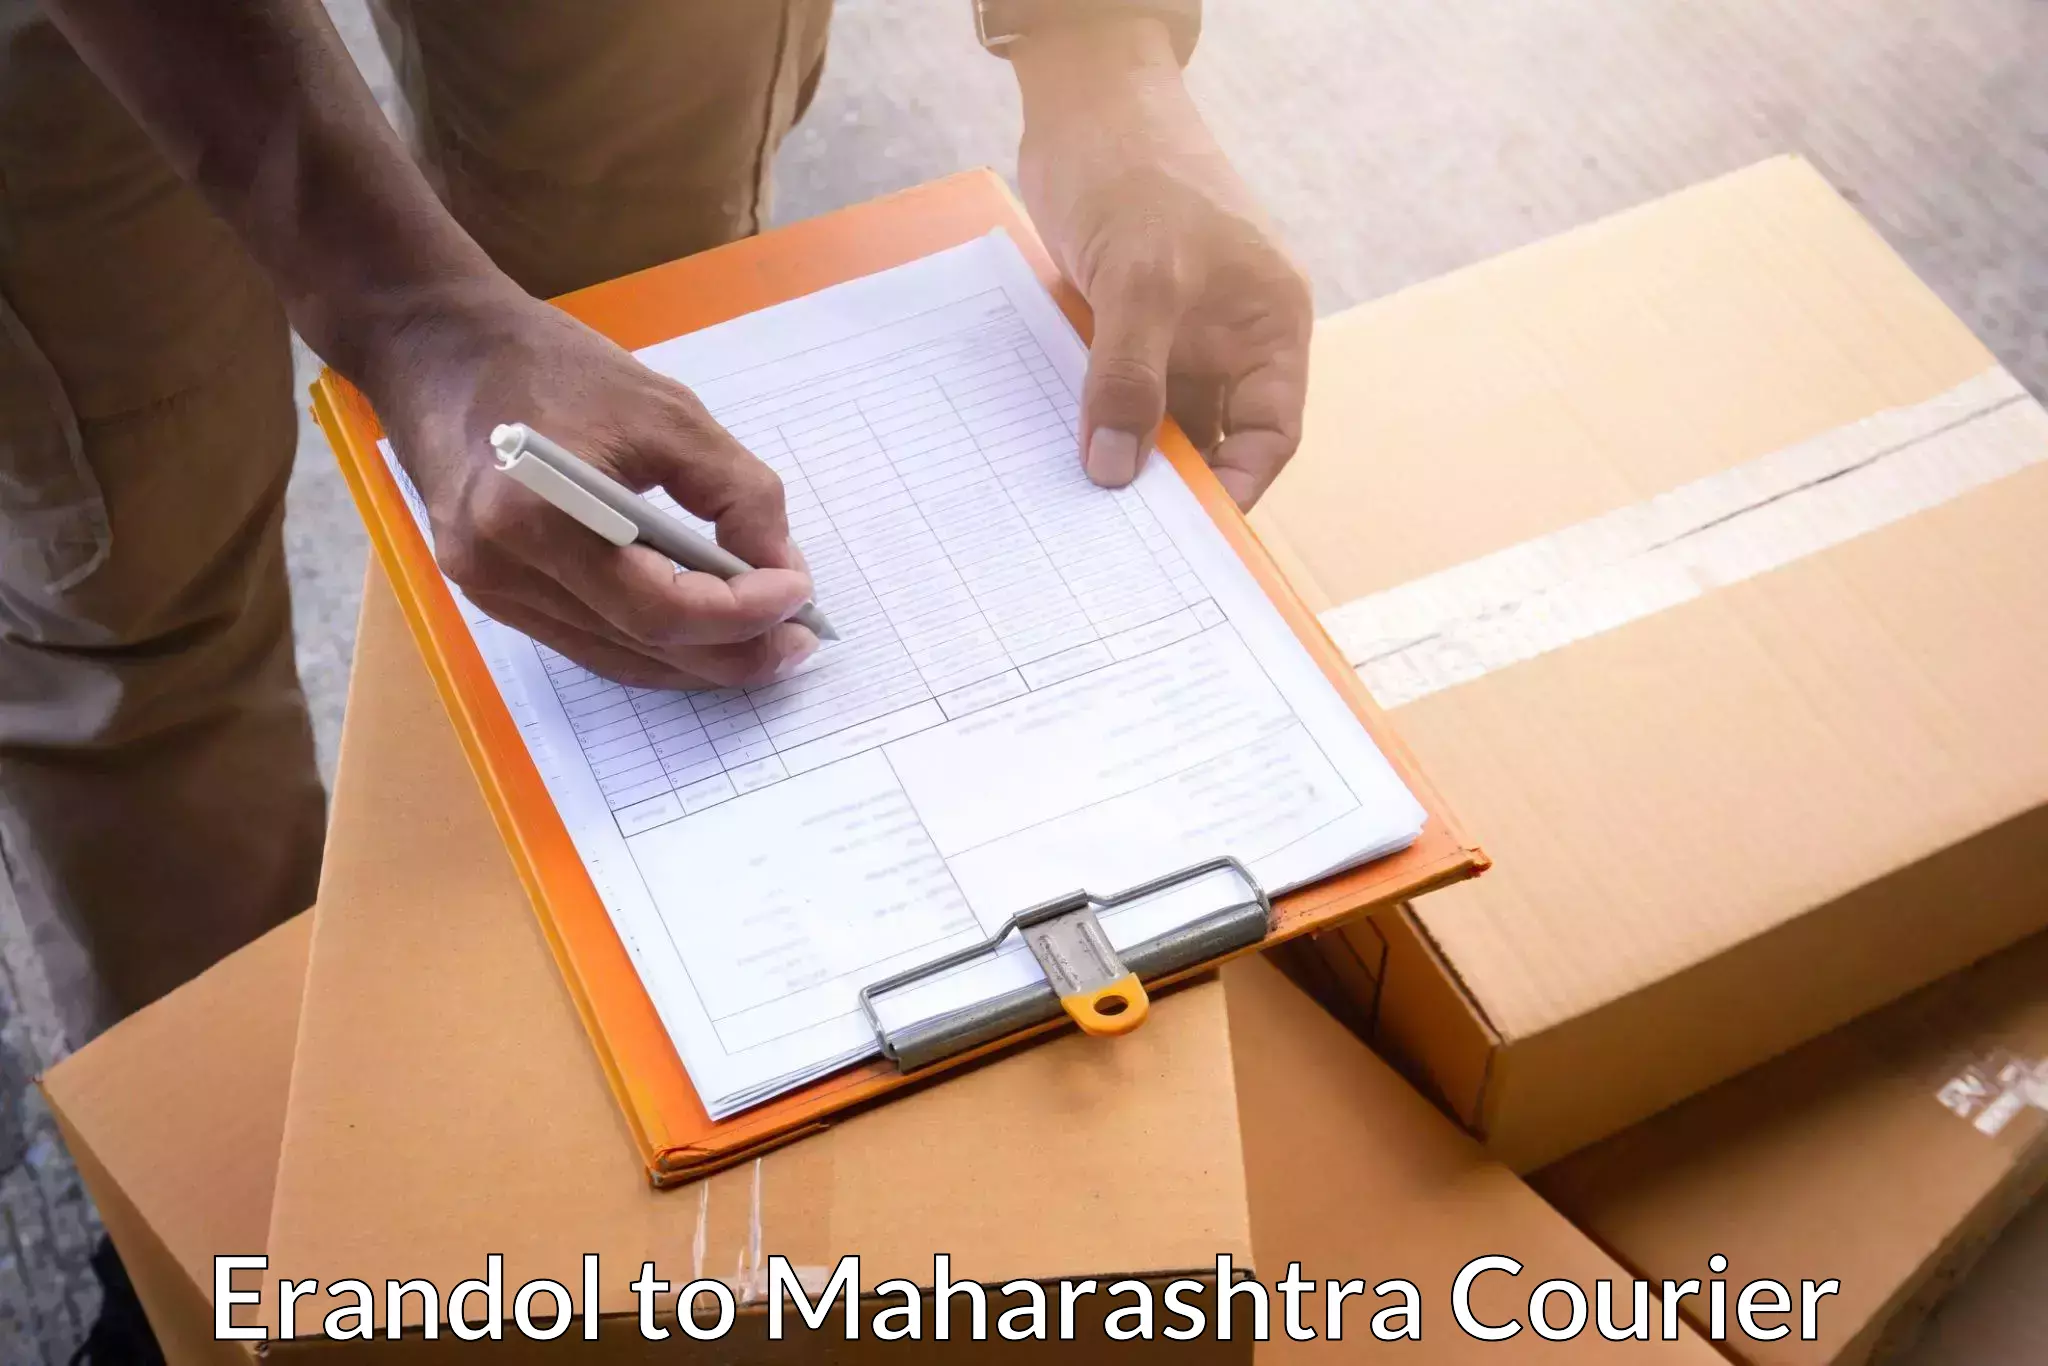 Door-to-door freight service Erandol to Maharashtra